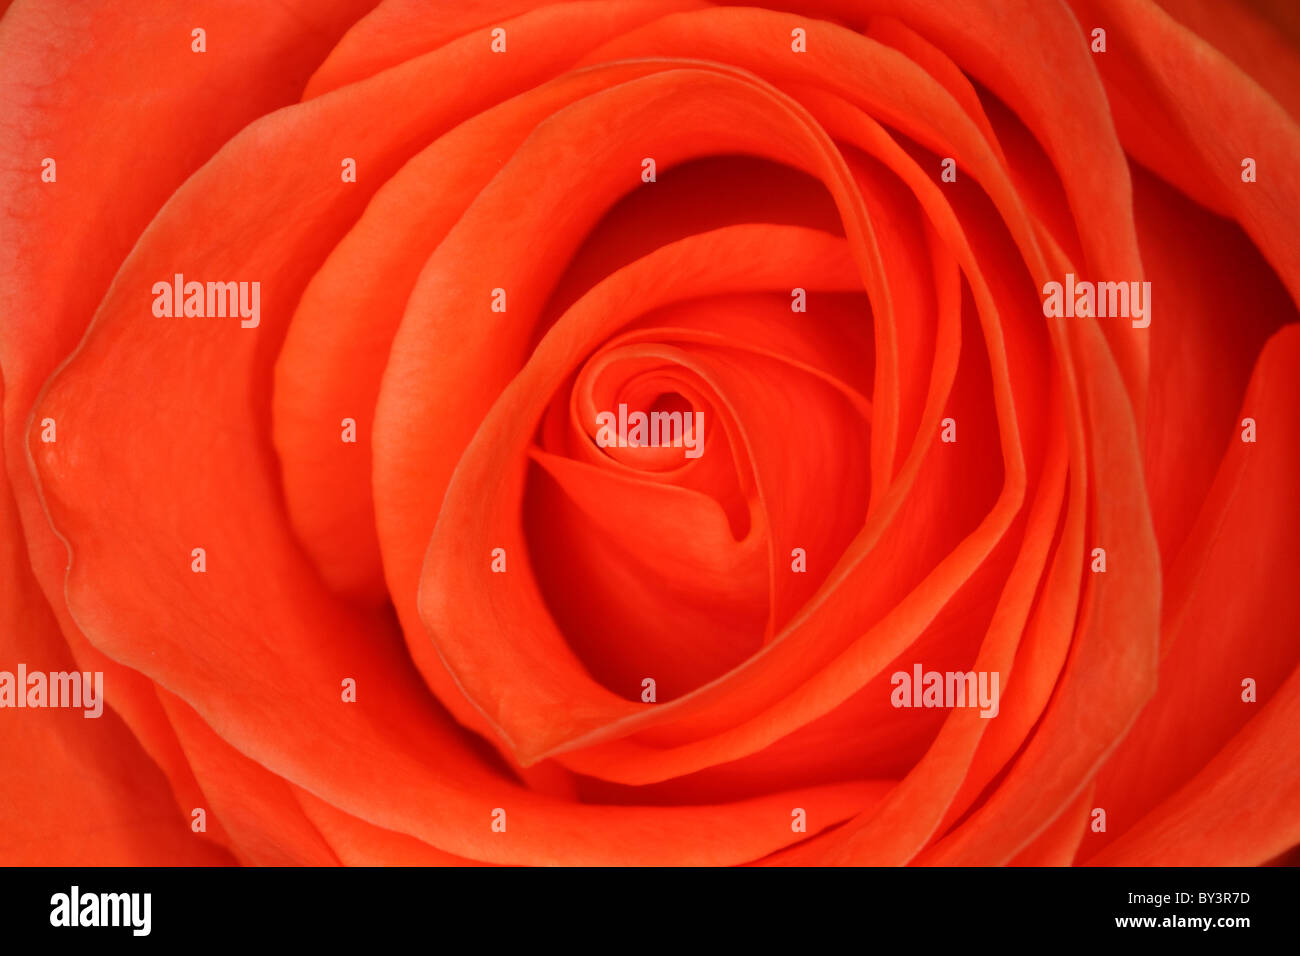 Motif de pétales de rose orange Banque D'Images